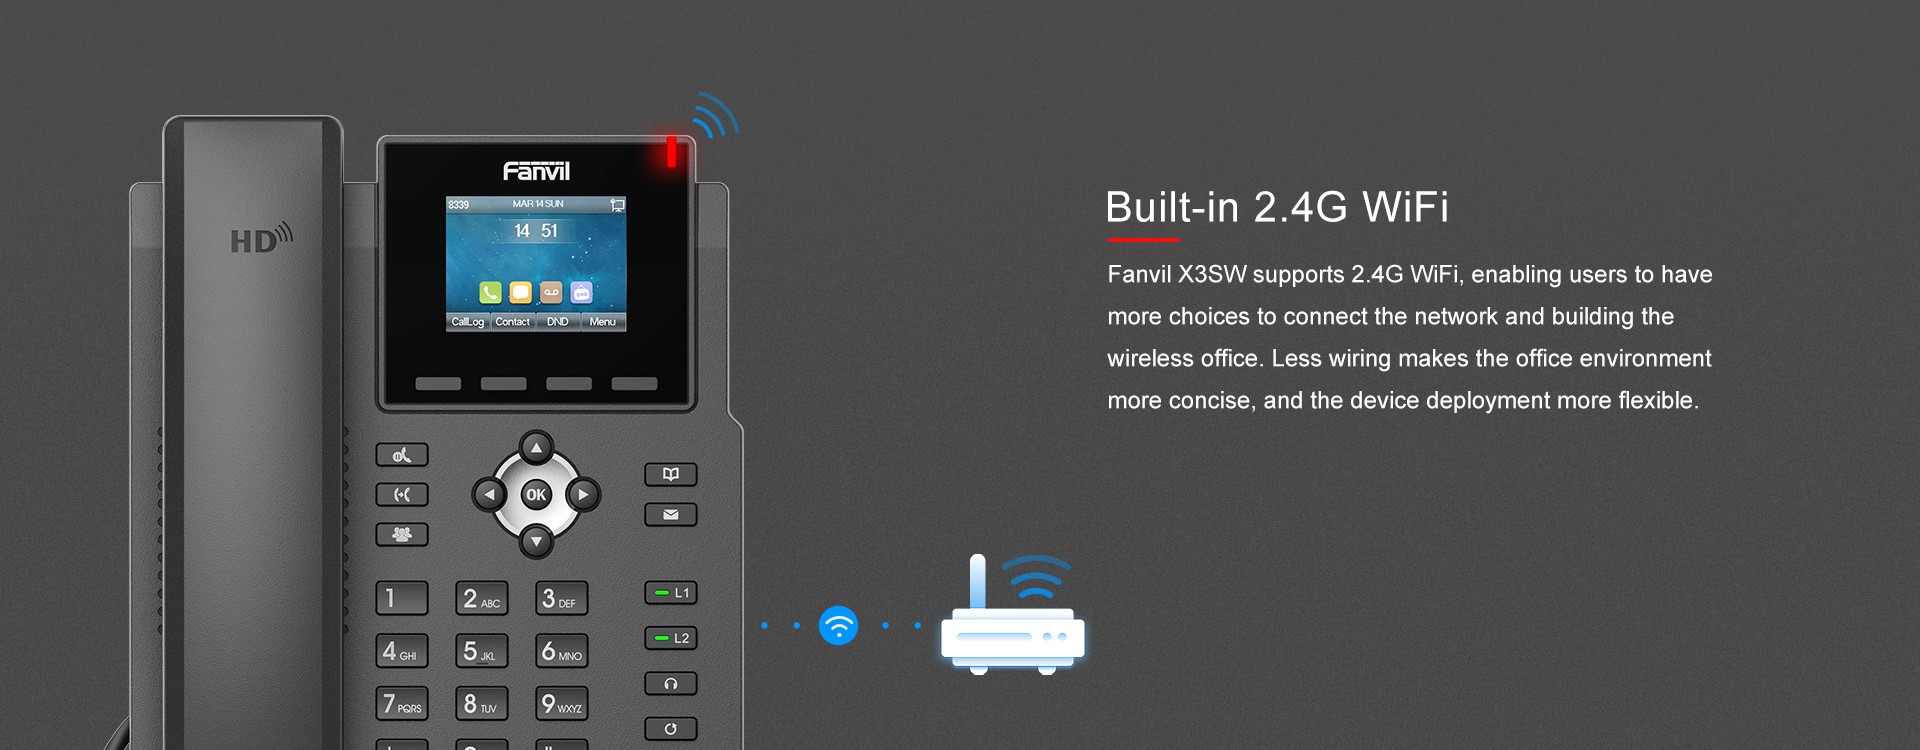 Fanvil X3W IP Phone